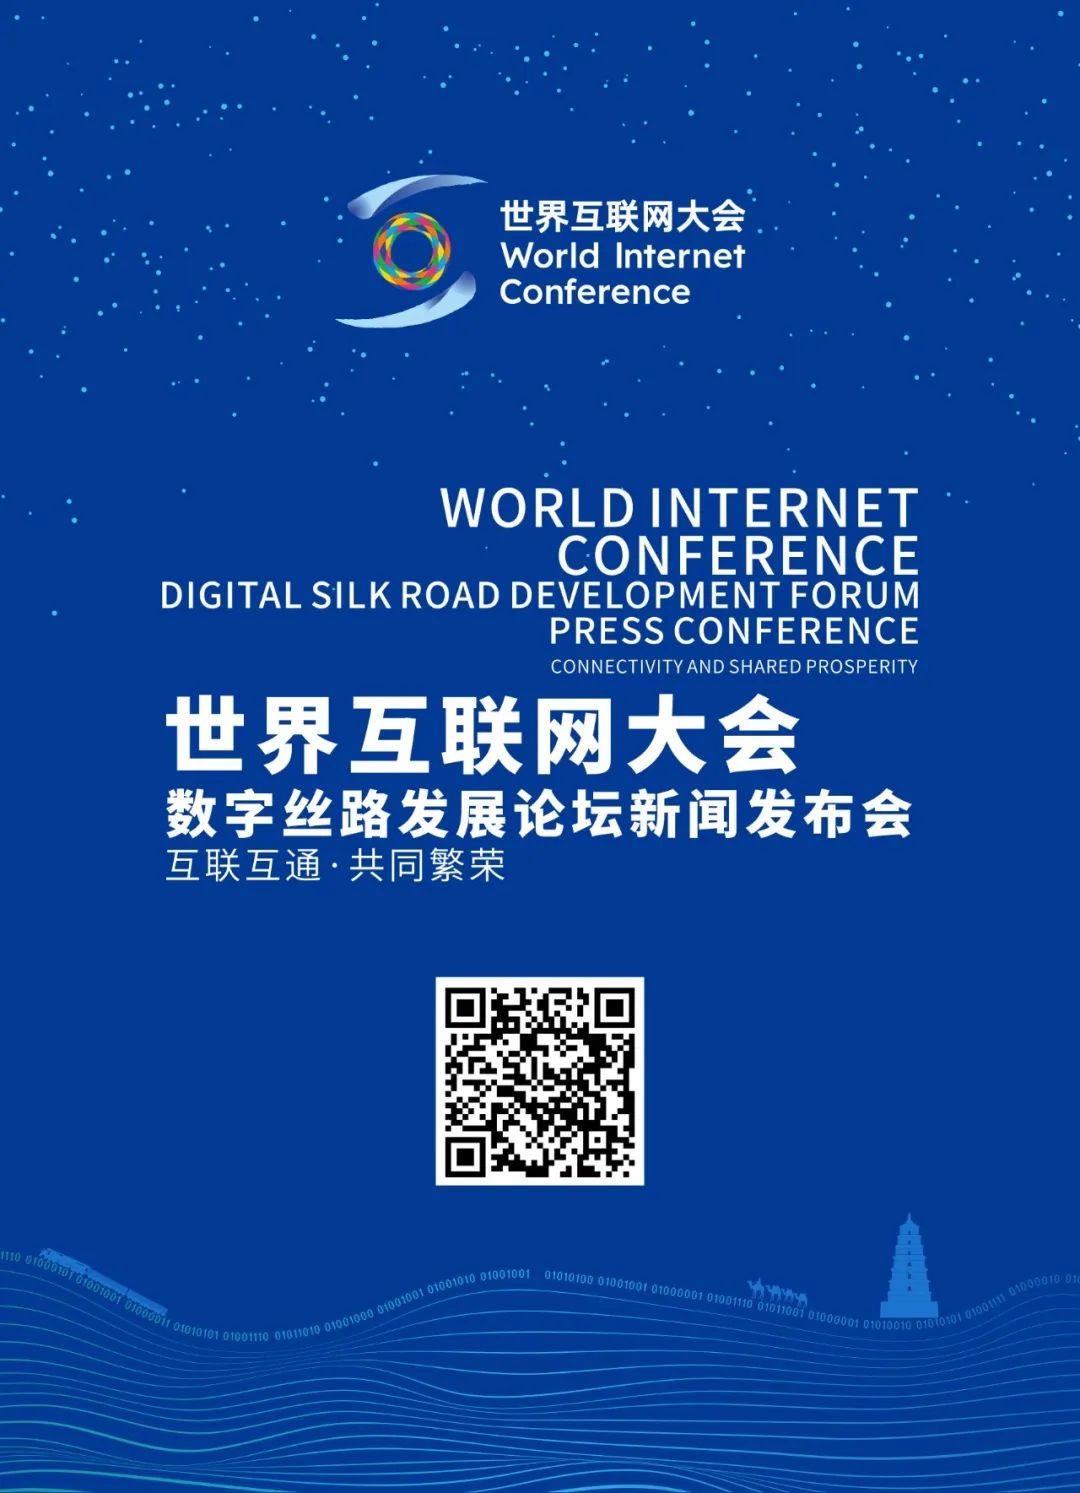 世界互联网大会数字丝路发展论坛新闻发布会将于3月27日举办